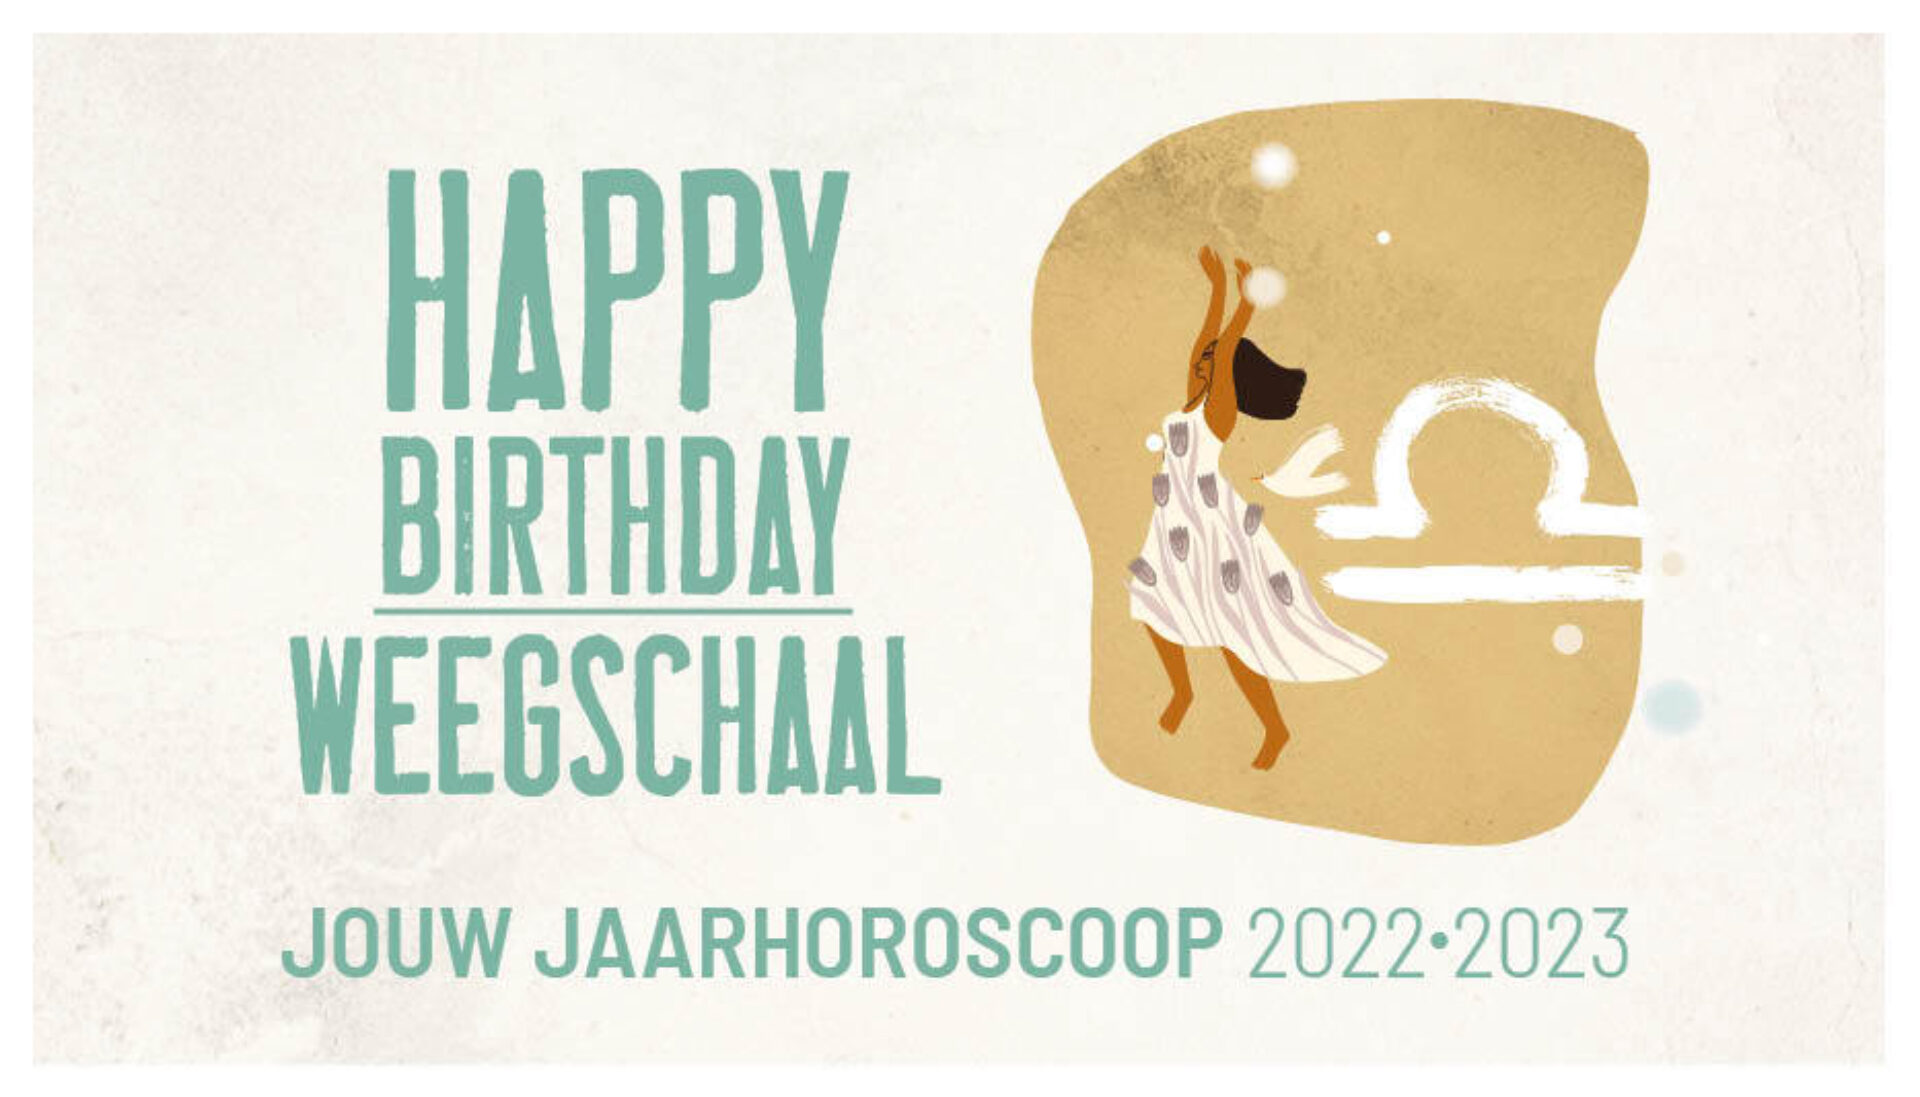 Weegschaal, jouw jaarhoroscoop 2022-2023: gelukkige verjaardag!